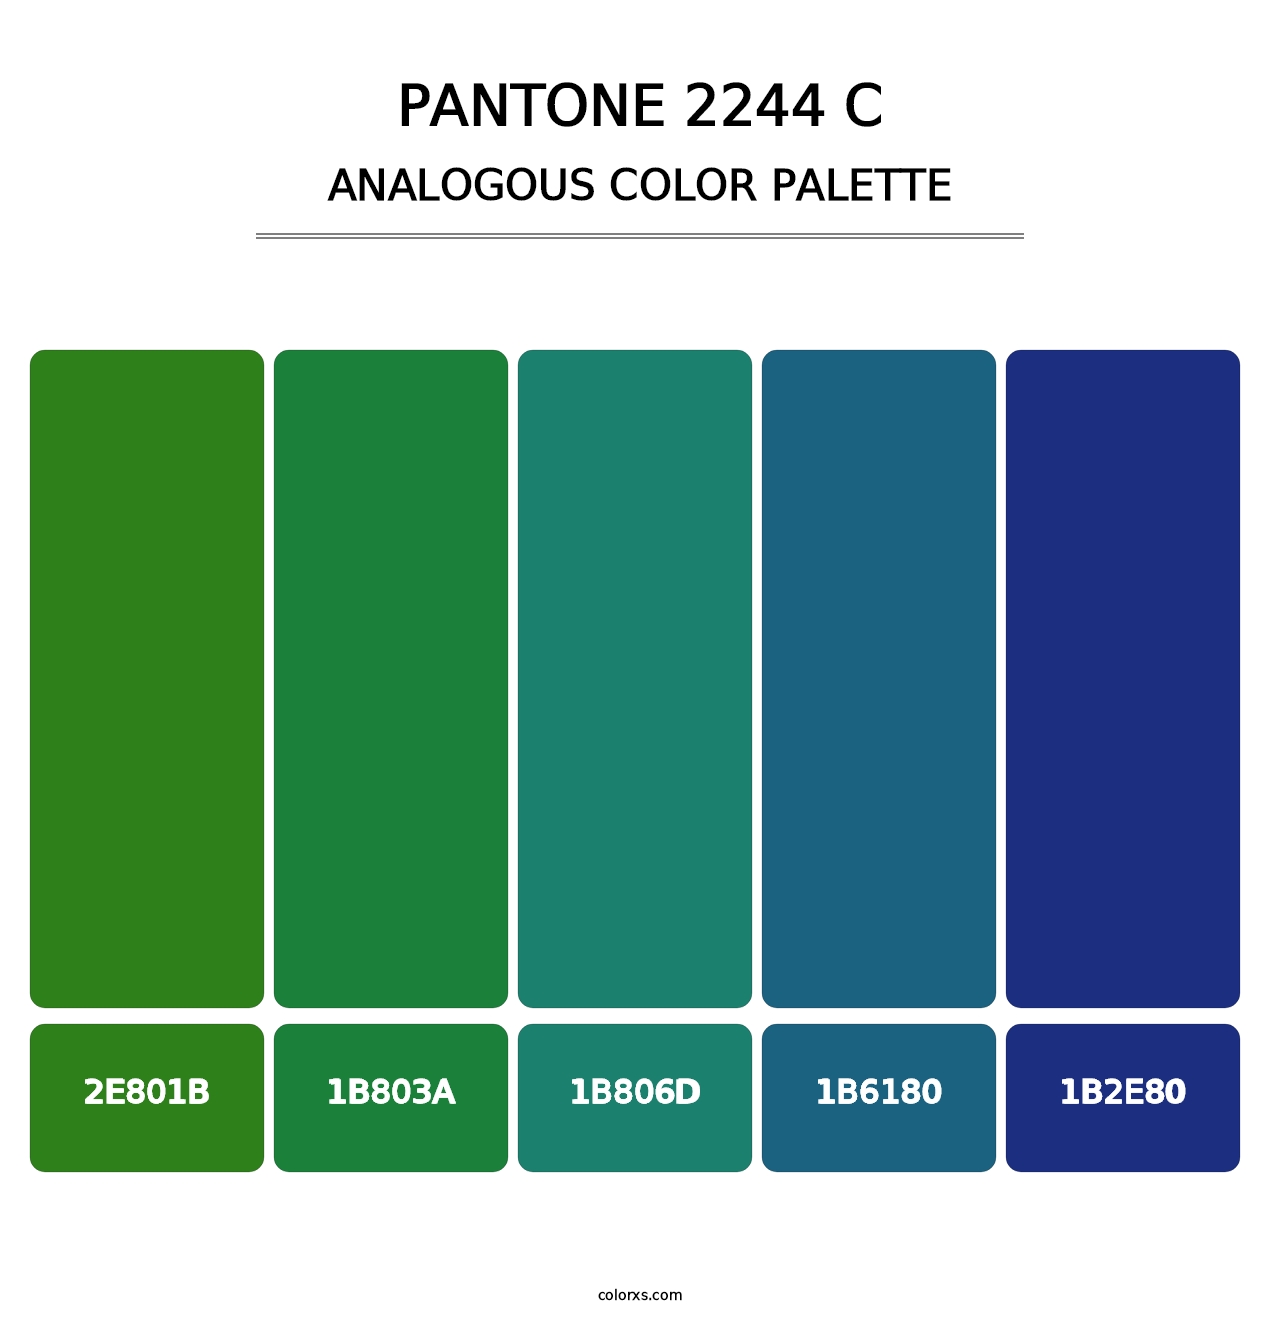 PANTONE 2244 C - Analogous Color Palette